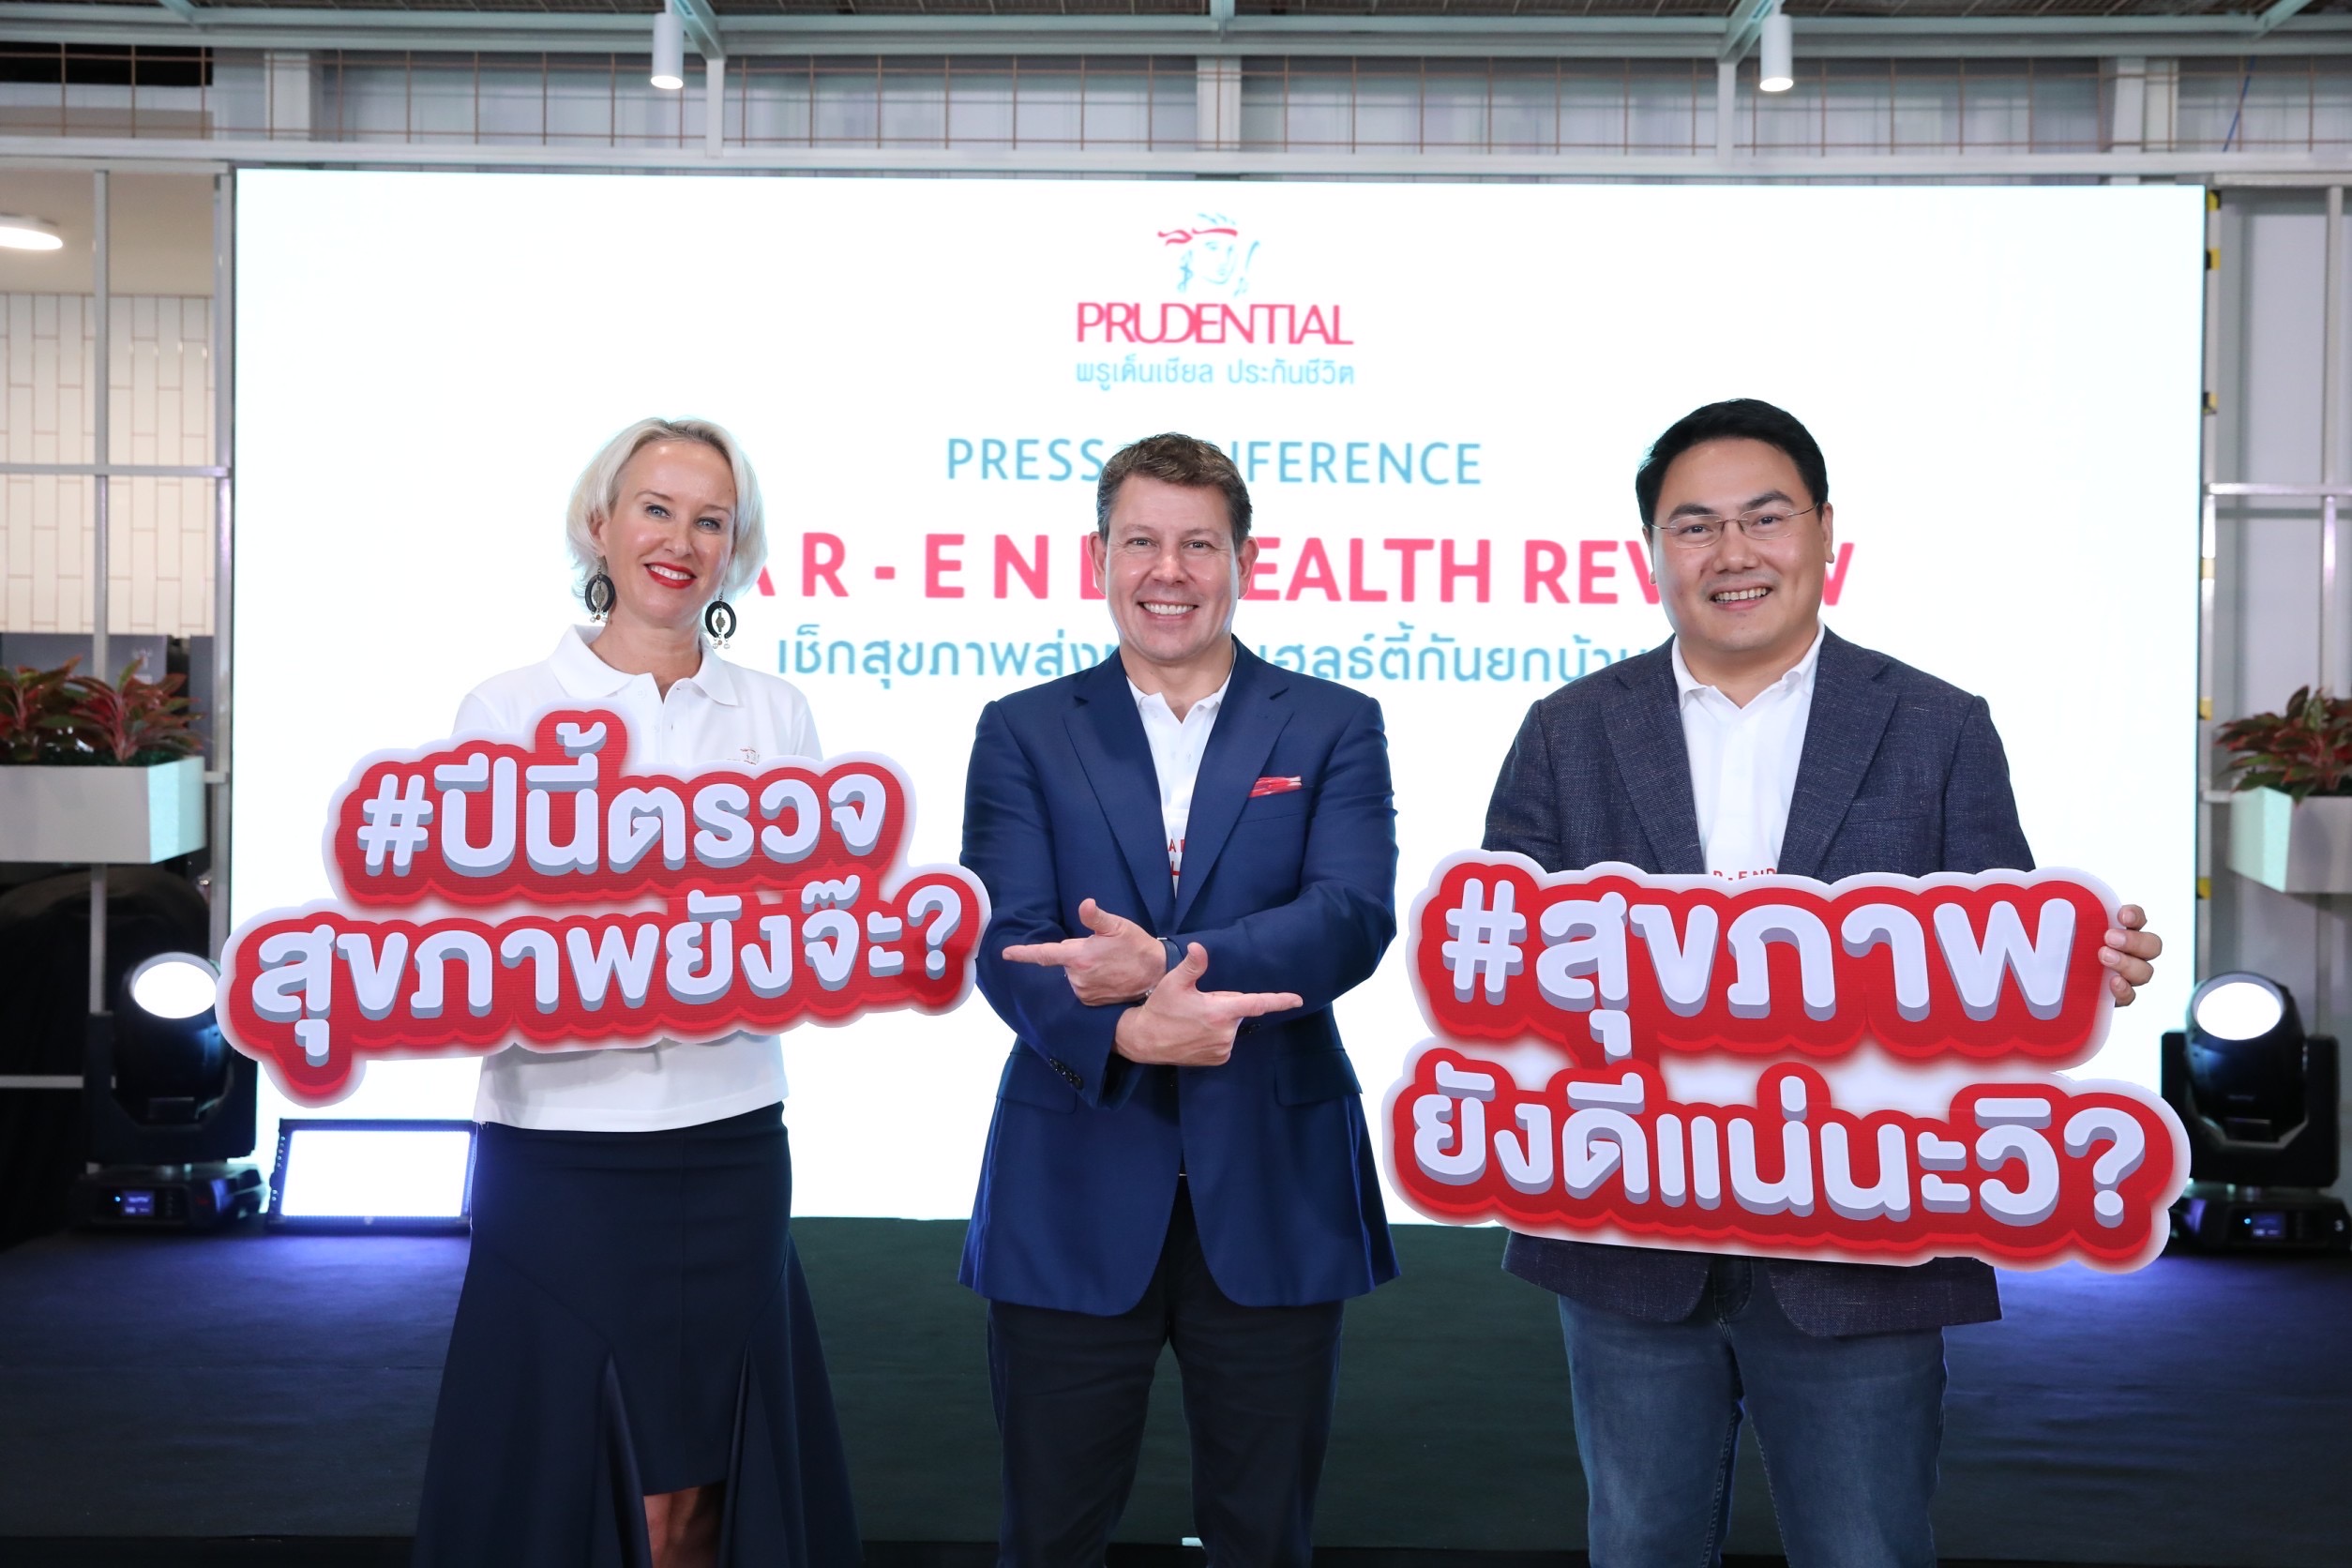 พรูเด็นเชียล ประเทศไทย ชวนคนไทยหันมาพูดคุยเรื่องสุขภาพ และตรวจเช็กร่างกายสม่ำเสมอ เปิดตัวแคมเปญ ‘Year End Health Review’ พร้อมให้คำปรึกษาและแนะนำแผนประกันรวมทั้งสิทธิประโยชน์ต่างๆด้านสุขภาพอีกมากมาย